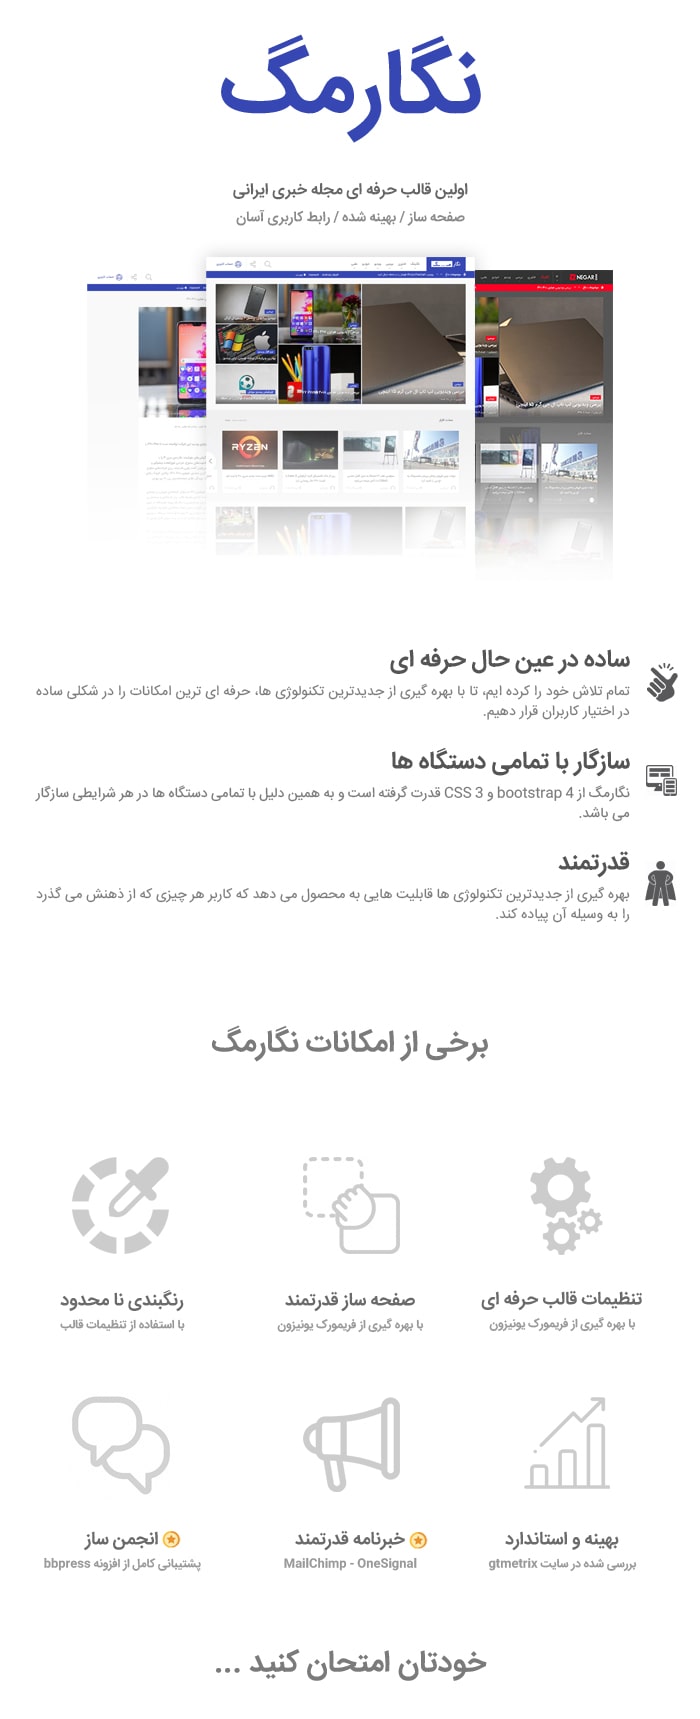 پوسته وردپرس مجله خبری نگارمگ قالب وردپرس ایرانی